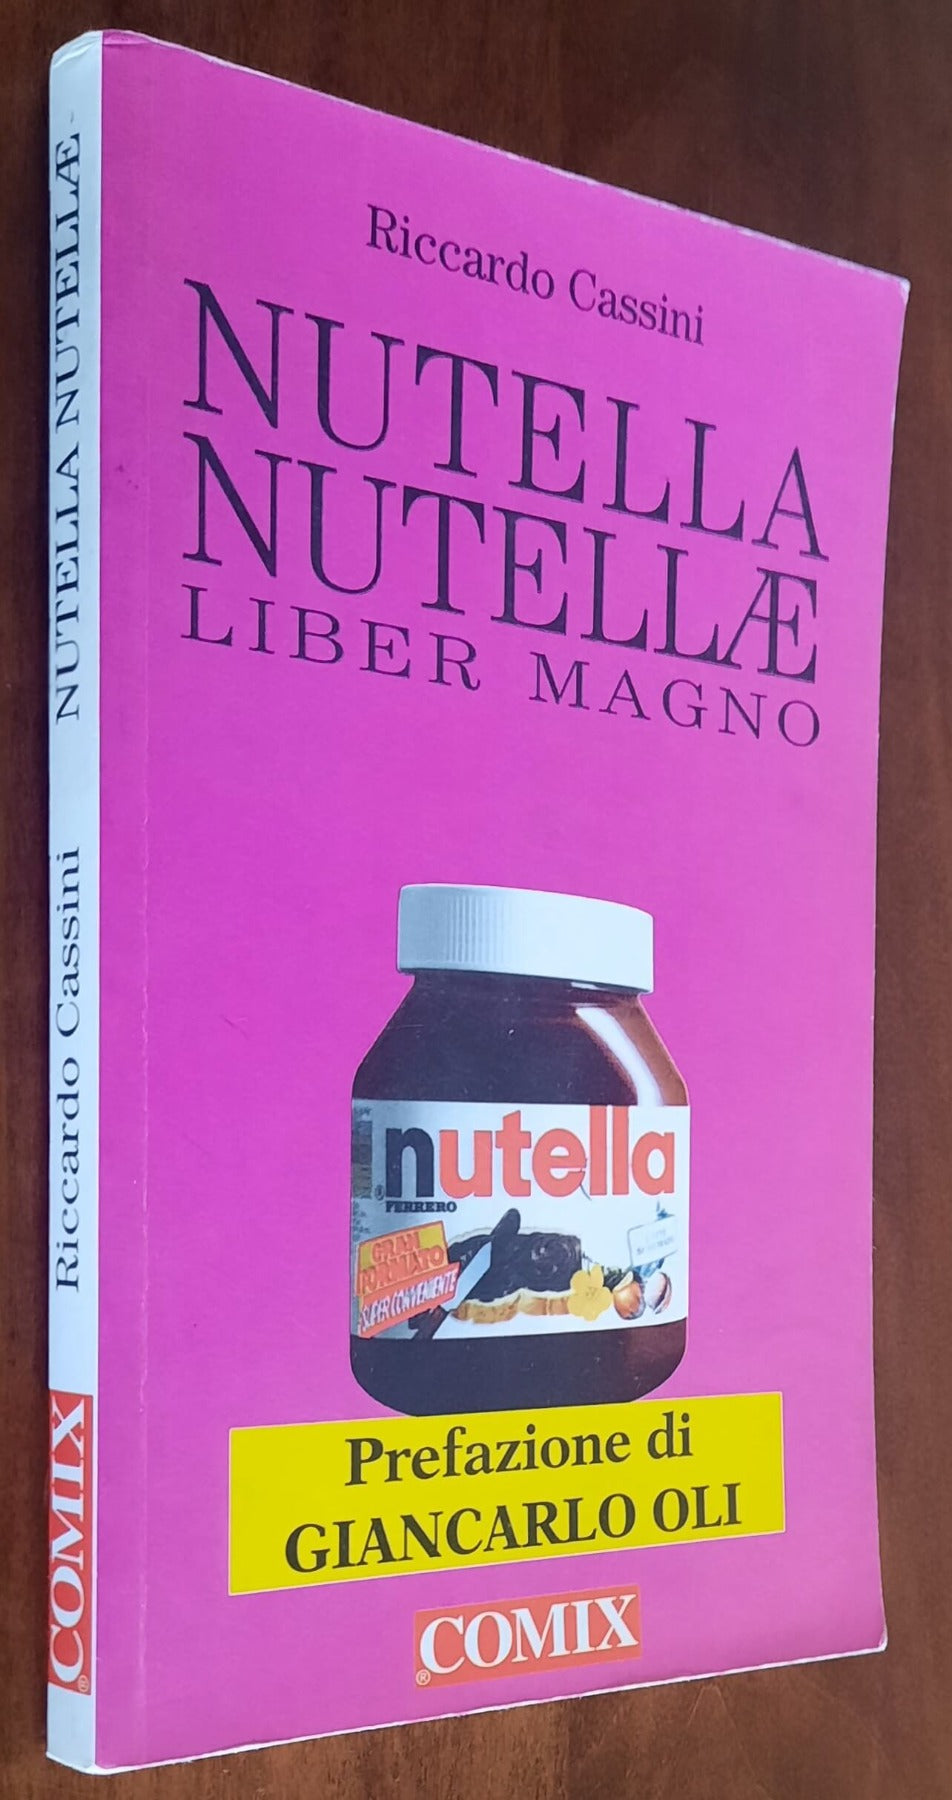 Nutella Nutellae. Liber Magno - di Riccardo Cassini - Comix